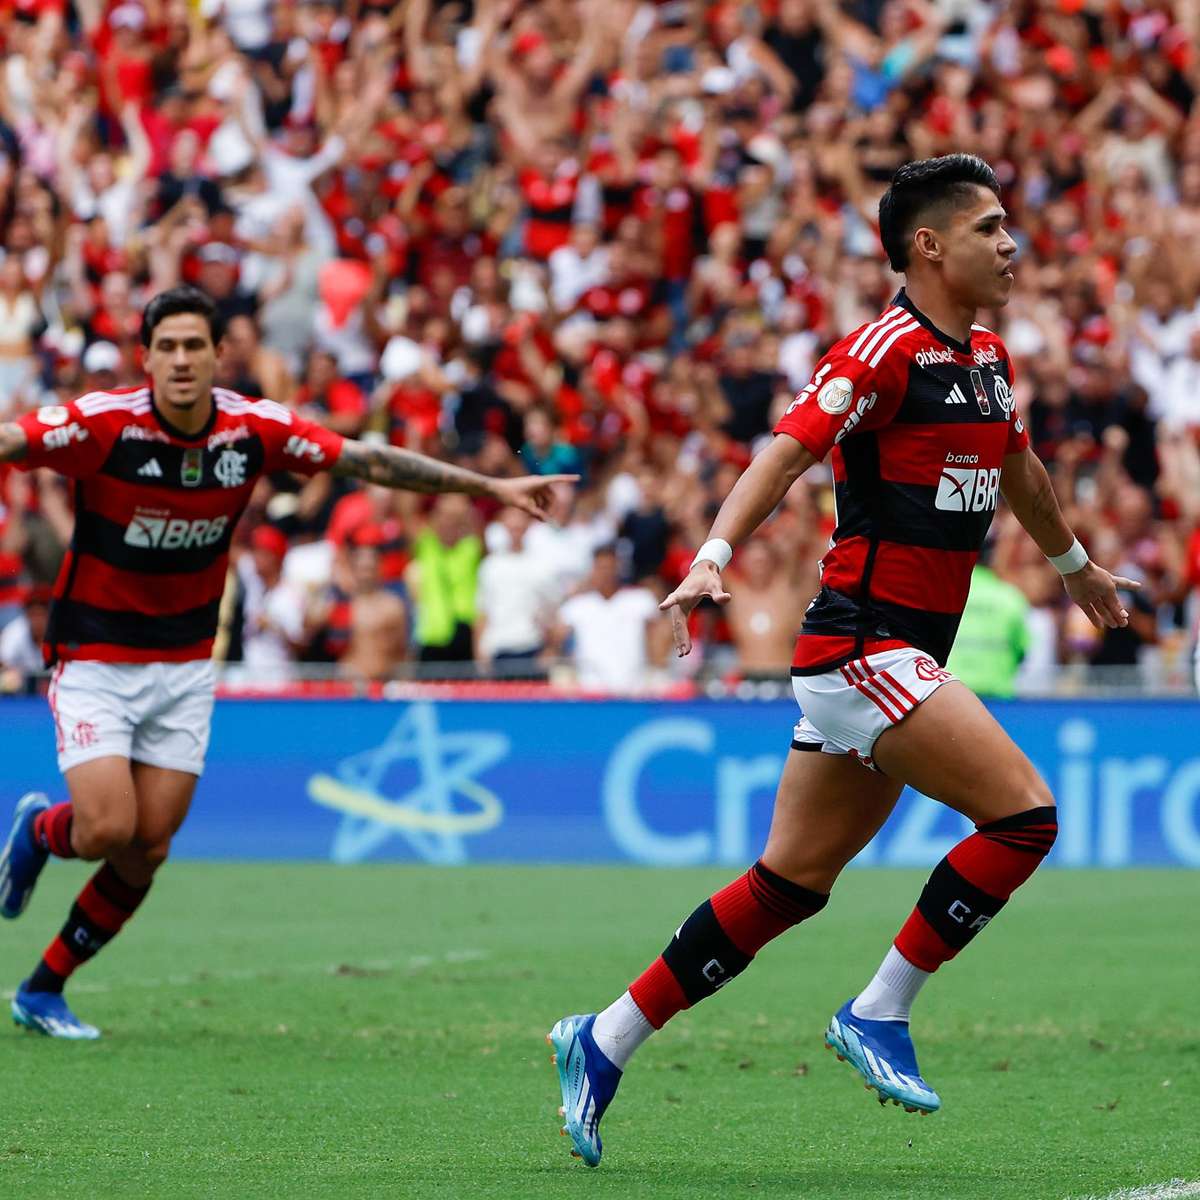 Pênalti para Flamengo contra Santos não foi revisado pelo VAR